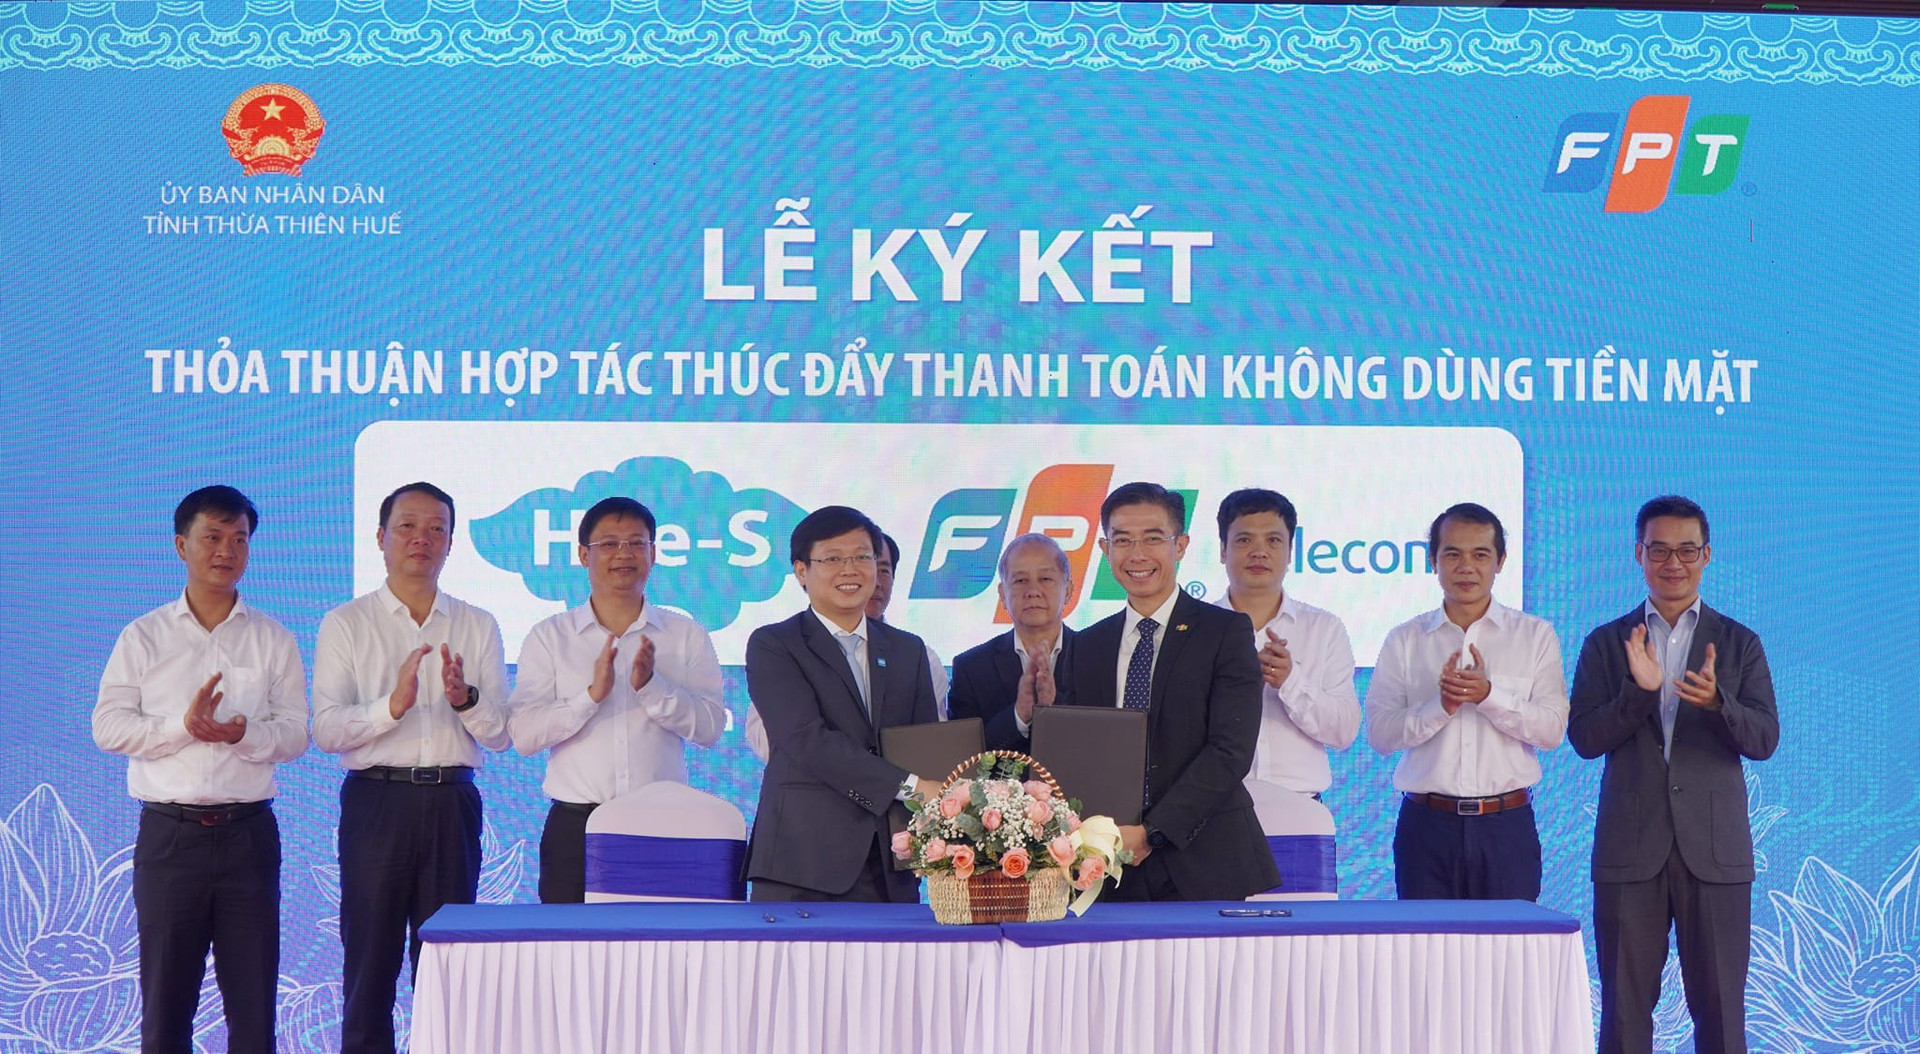 Ký kết thỏa thuận hợp tác thúc đẩy thanh toán không dùng tiền mặt tại tỉnh Thừa Thiên Huế giữa Trung tâm IOC Huế và Tập đoàn FPT